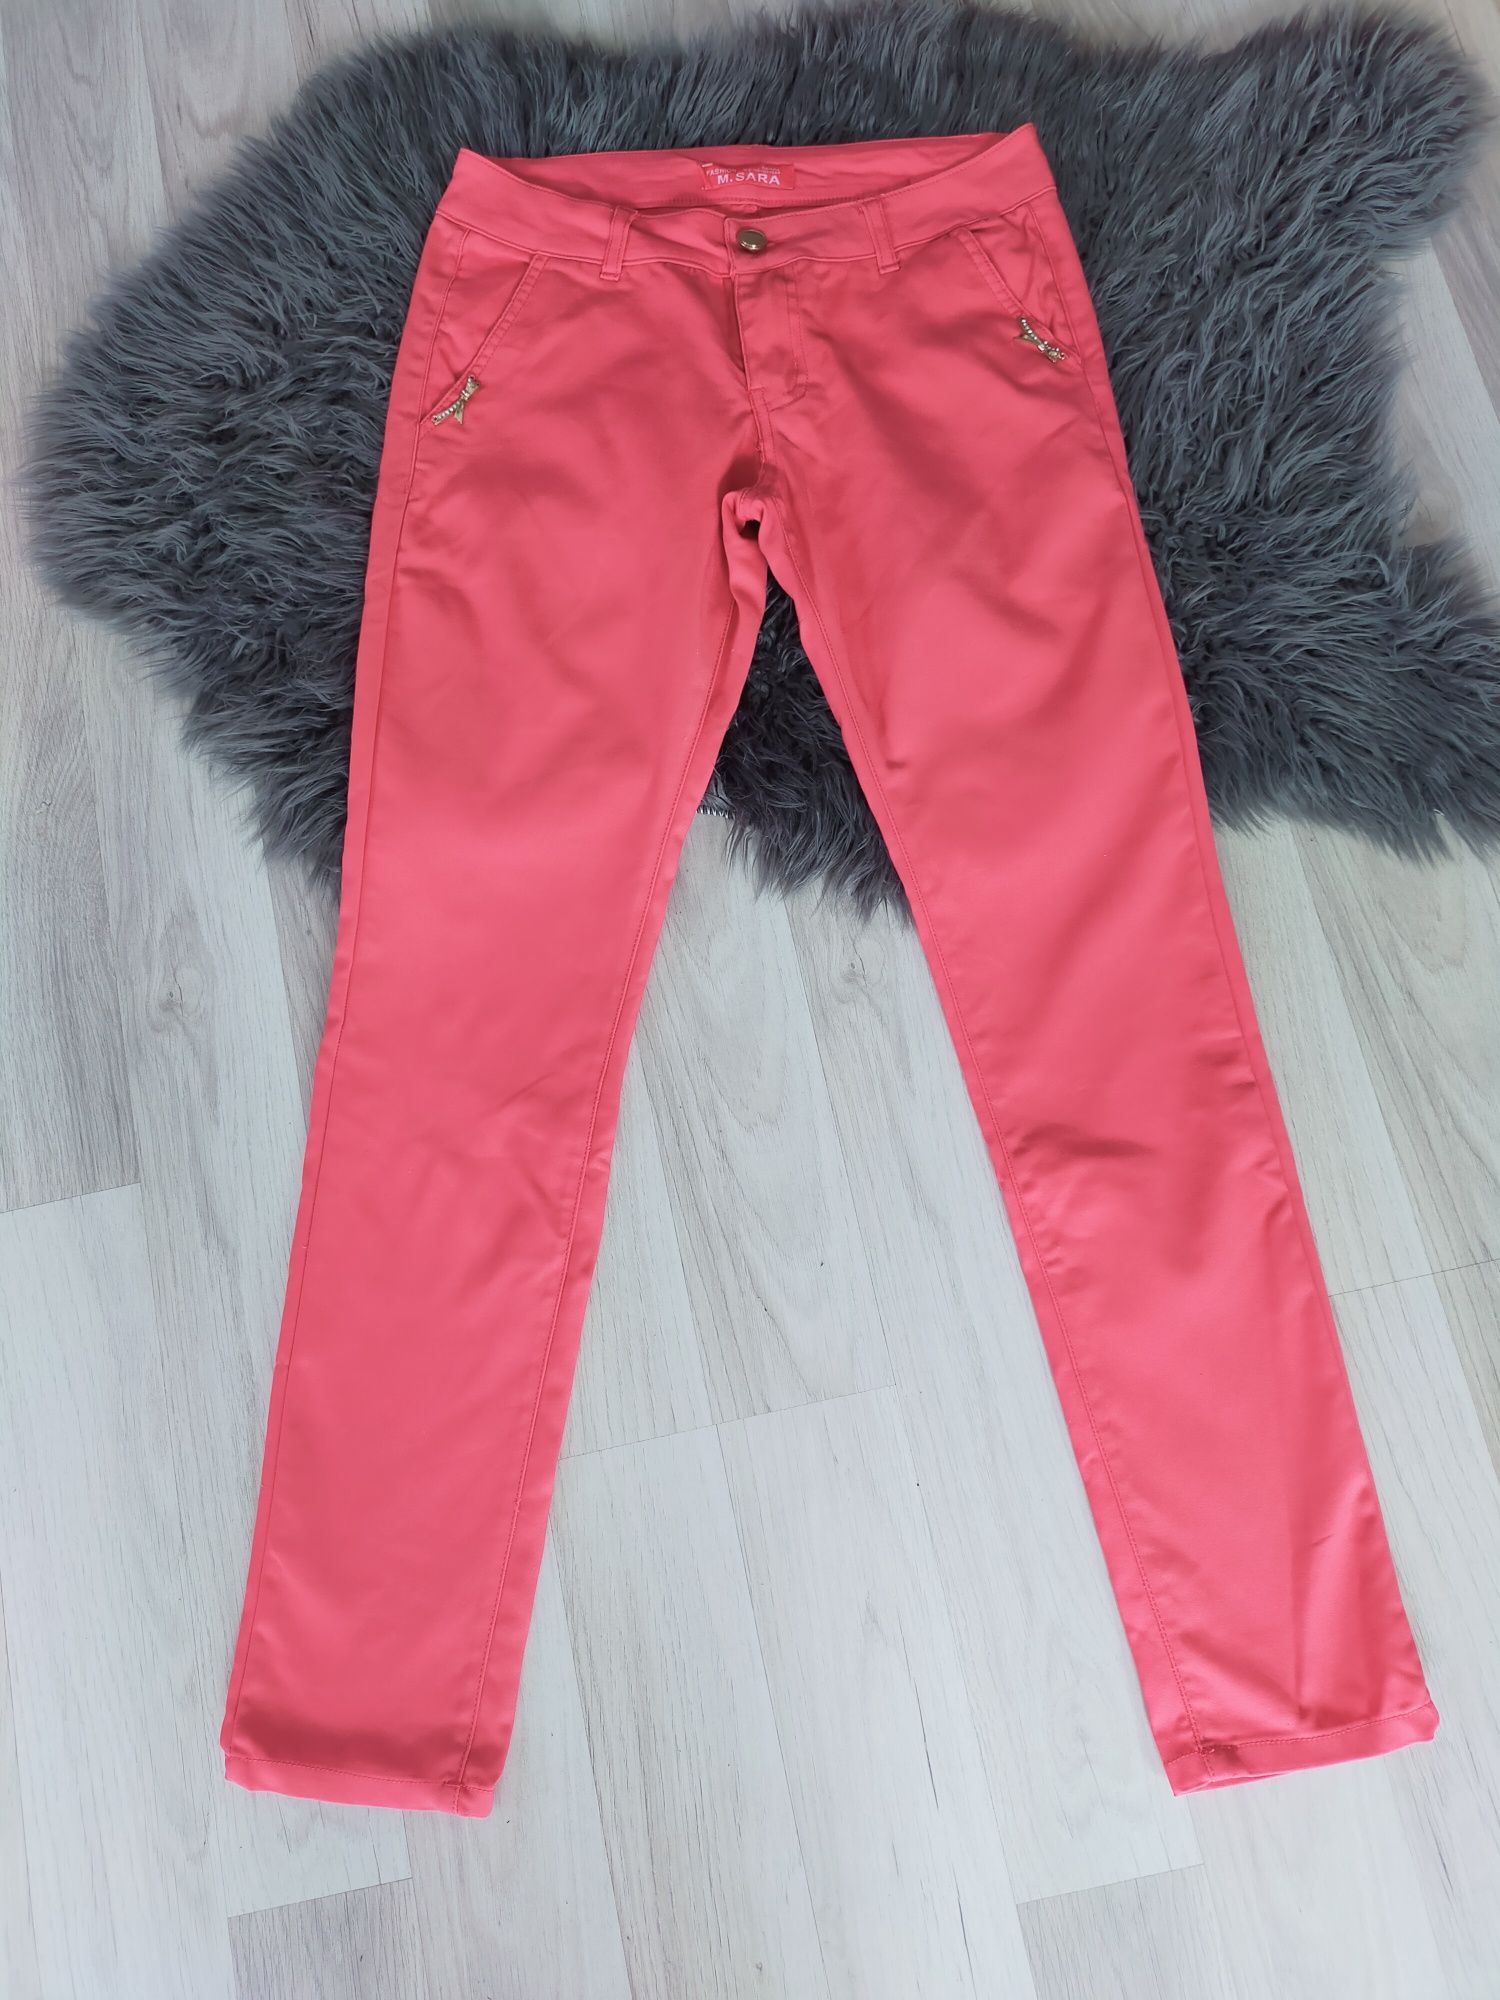 spodnie damskie materiałowe różowe malinowe rozmiar 38 M